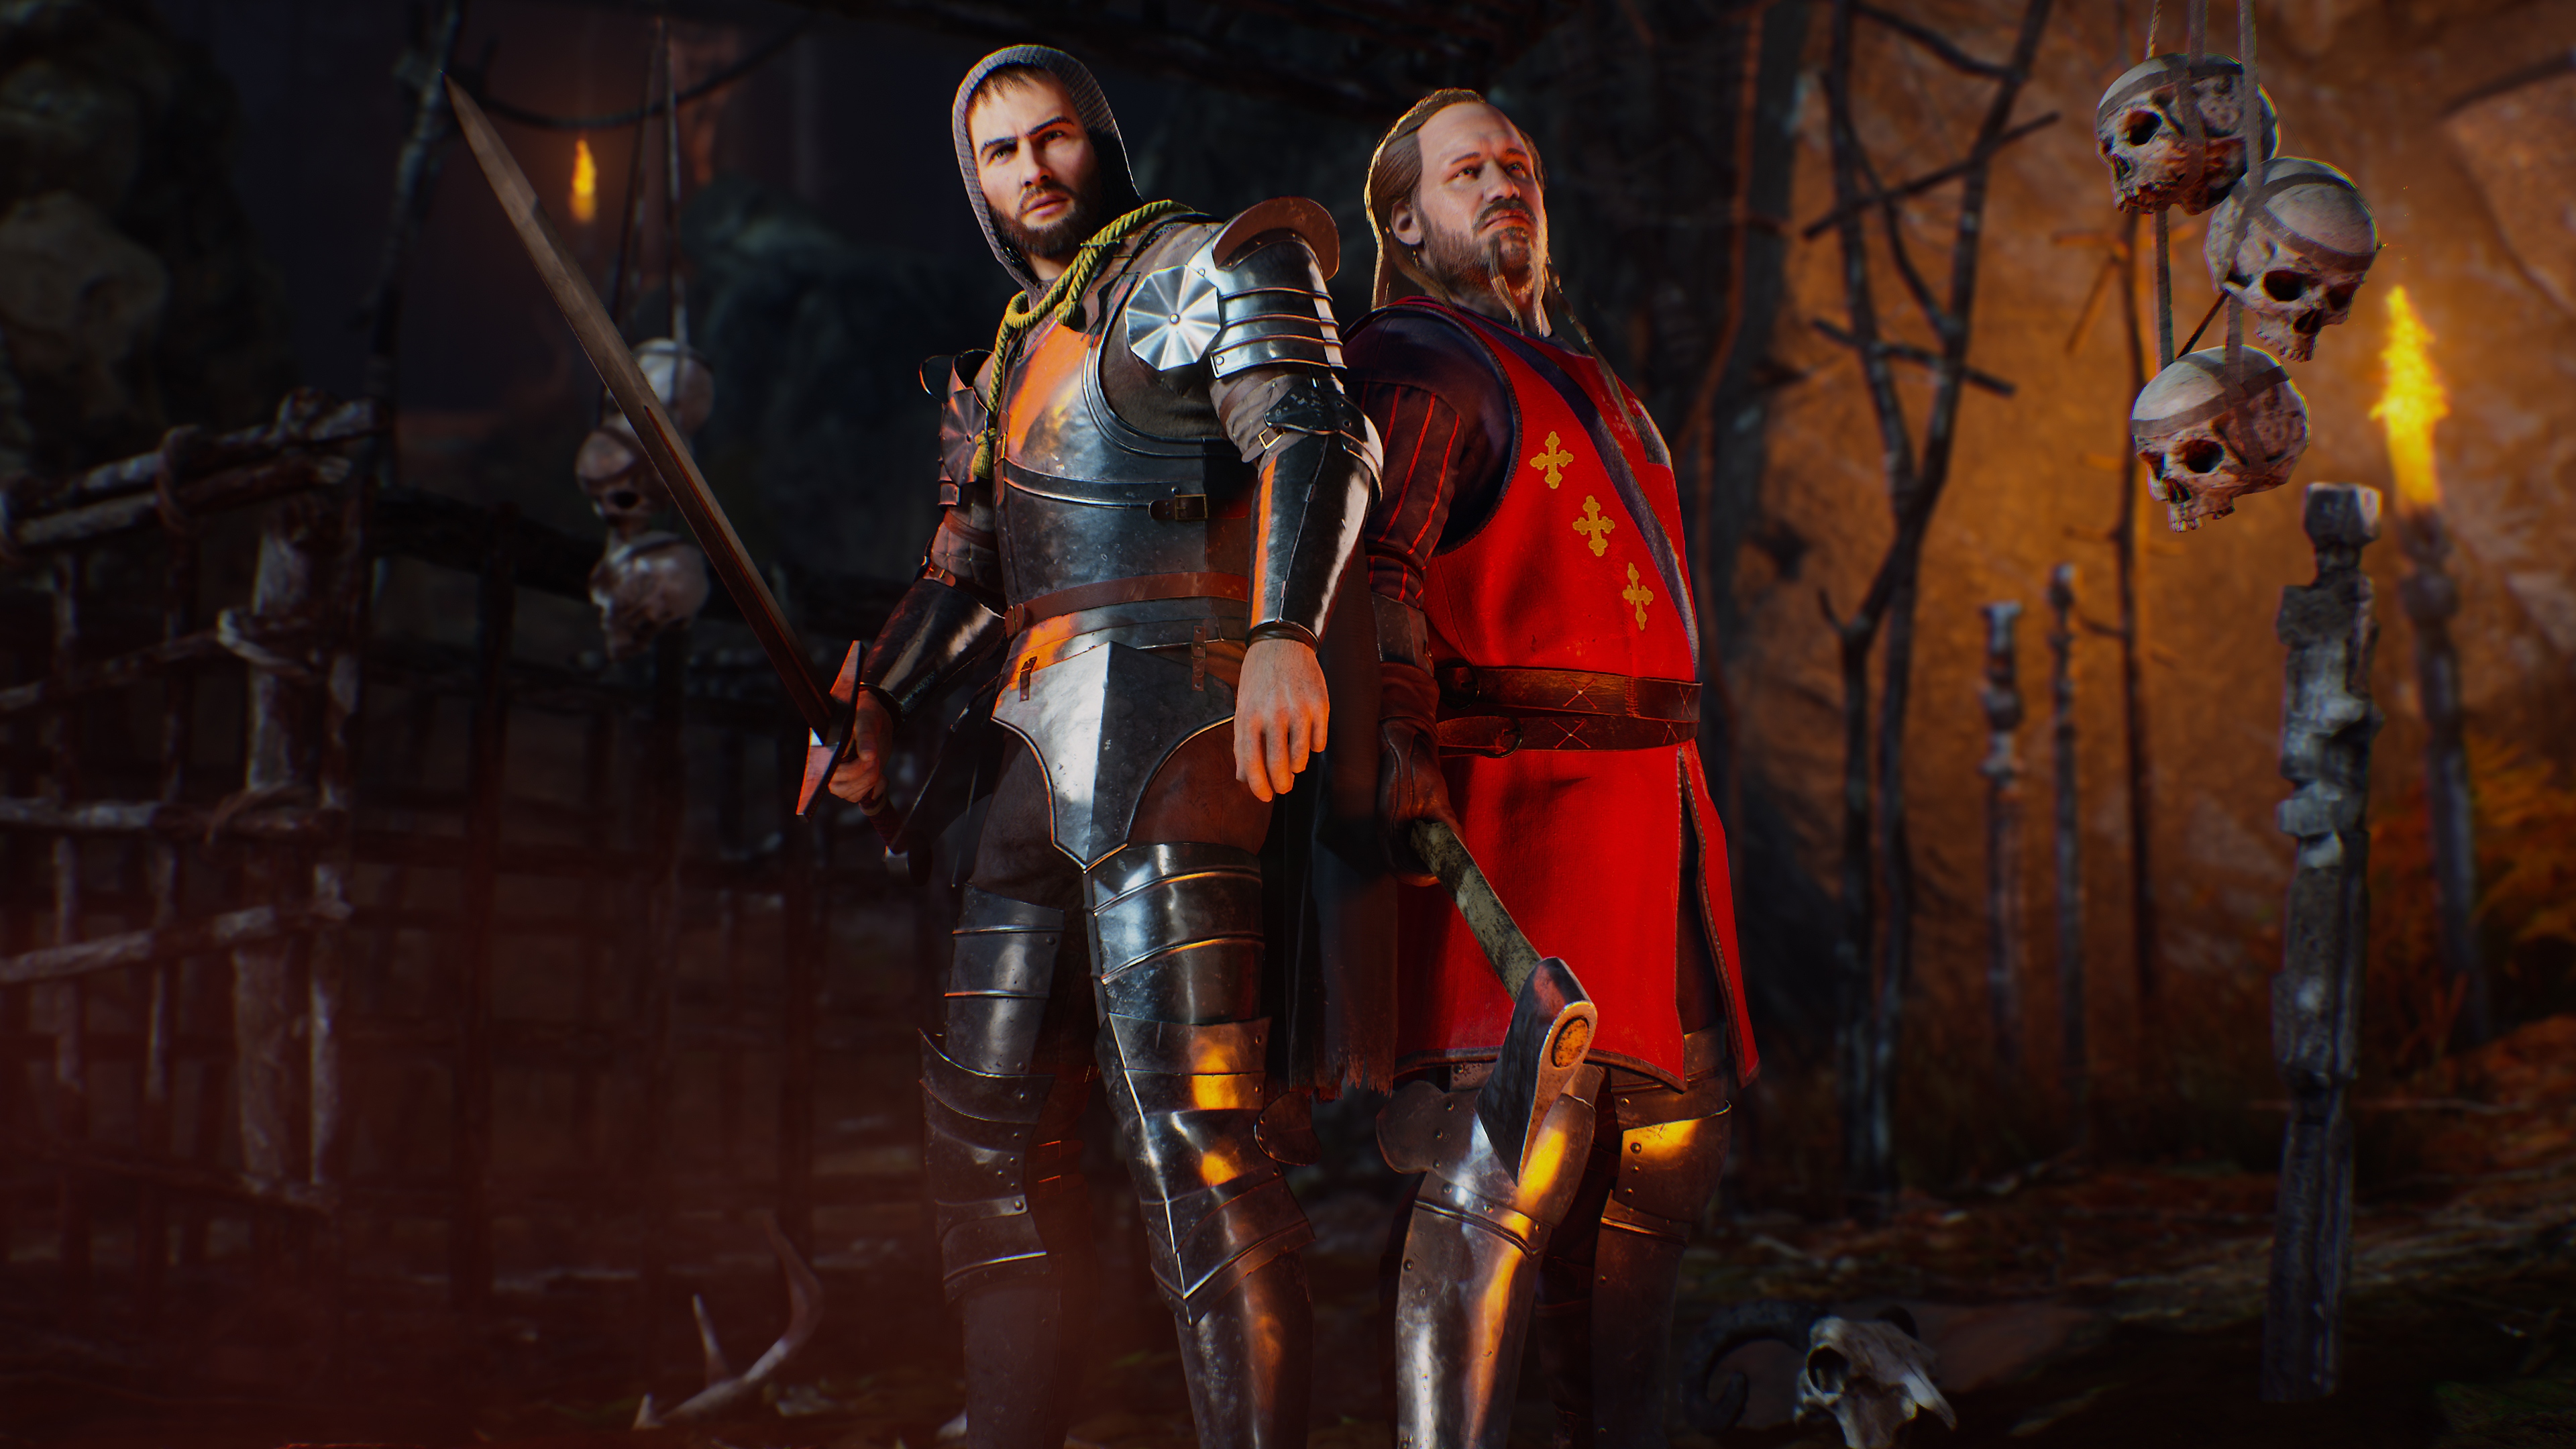 Evil Dead: The Game – kuvakaappaus jossa kaksi hahmoa on pukeutunut ikään kuin ritarit